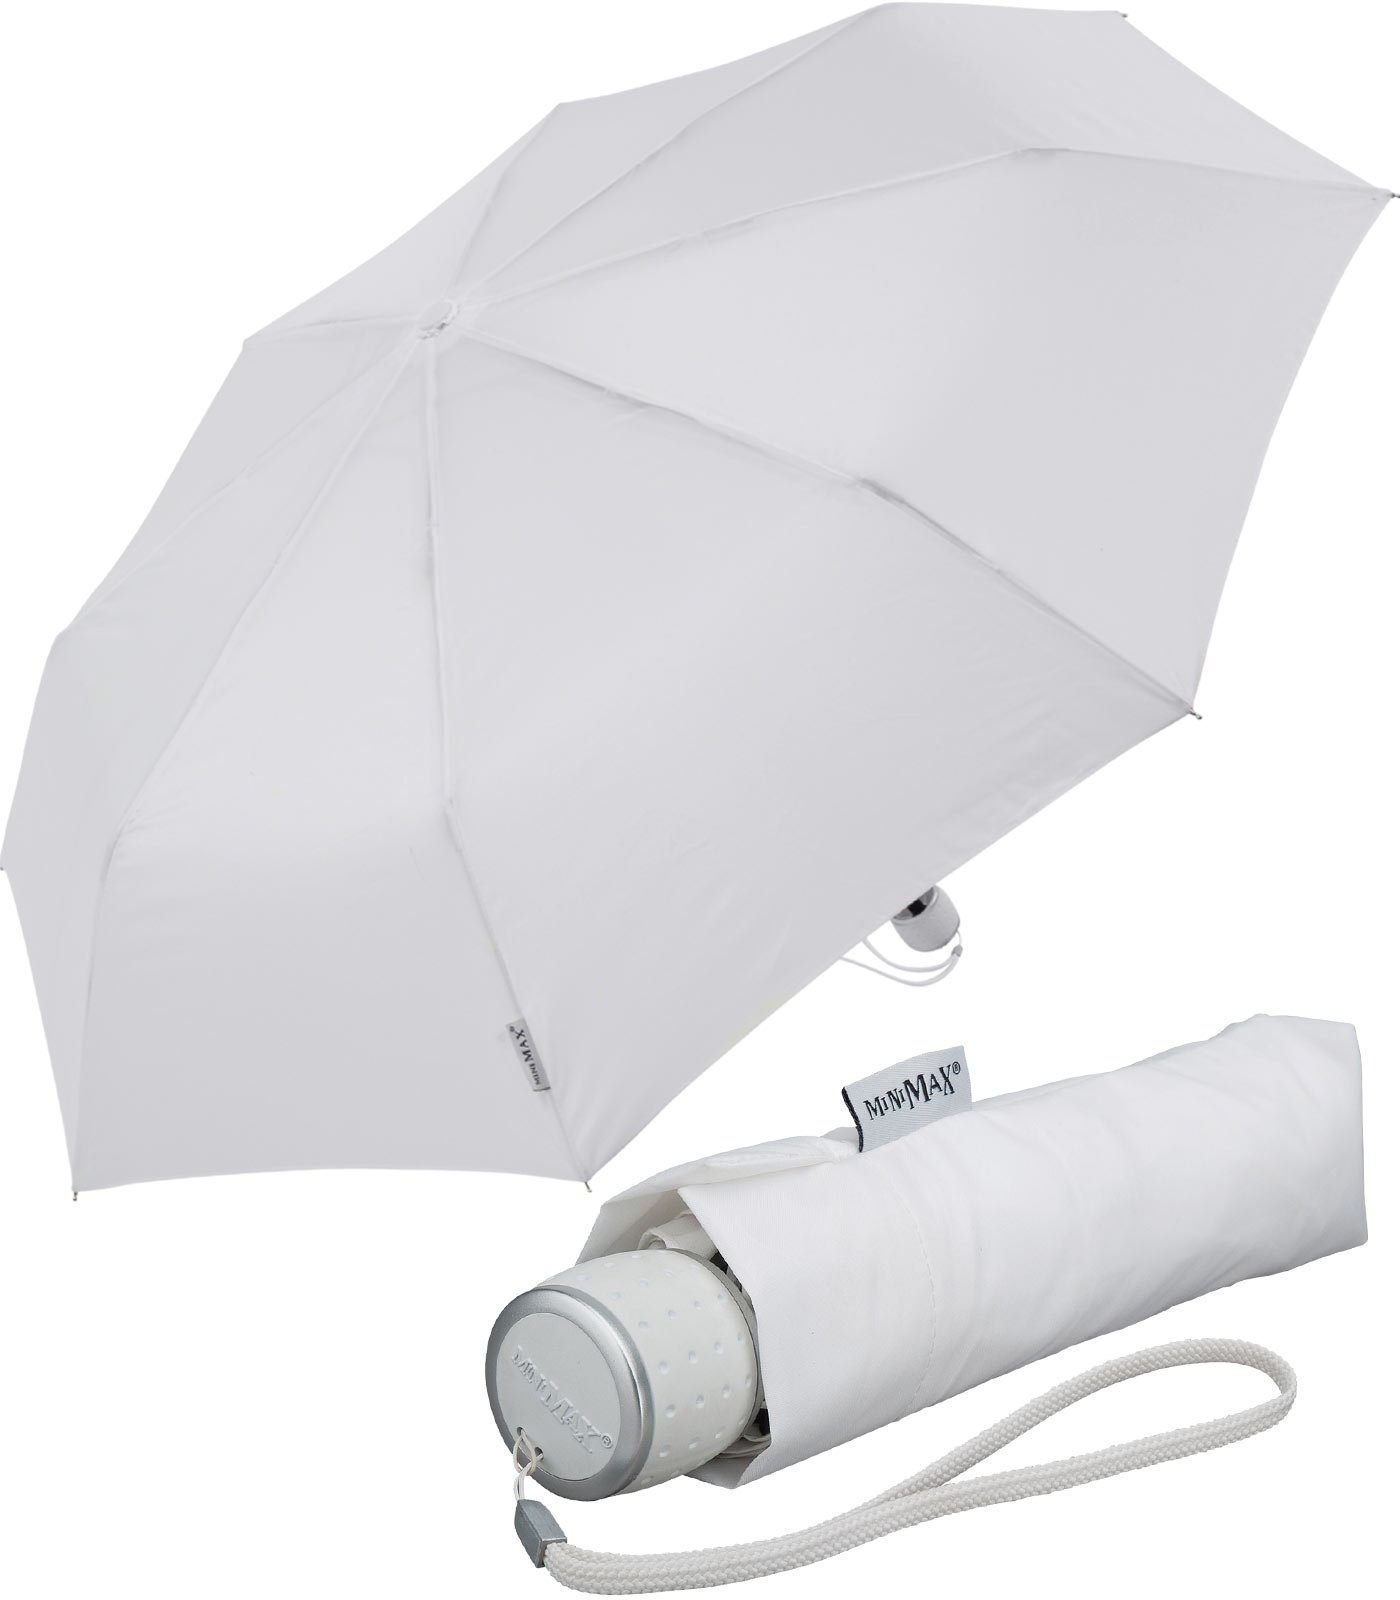 passt Handöffner, in Schirm Impliva weiß Taschenregenschirm leichter jjede kleiner miniMAX® Tasche